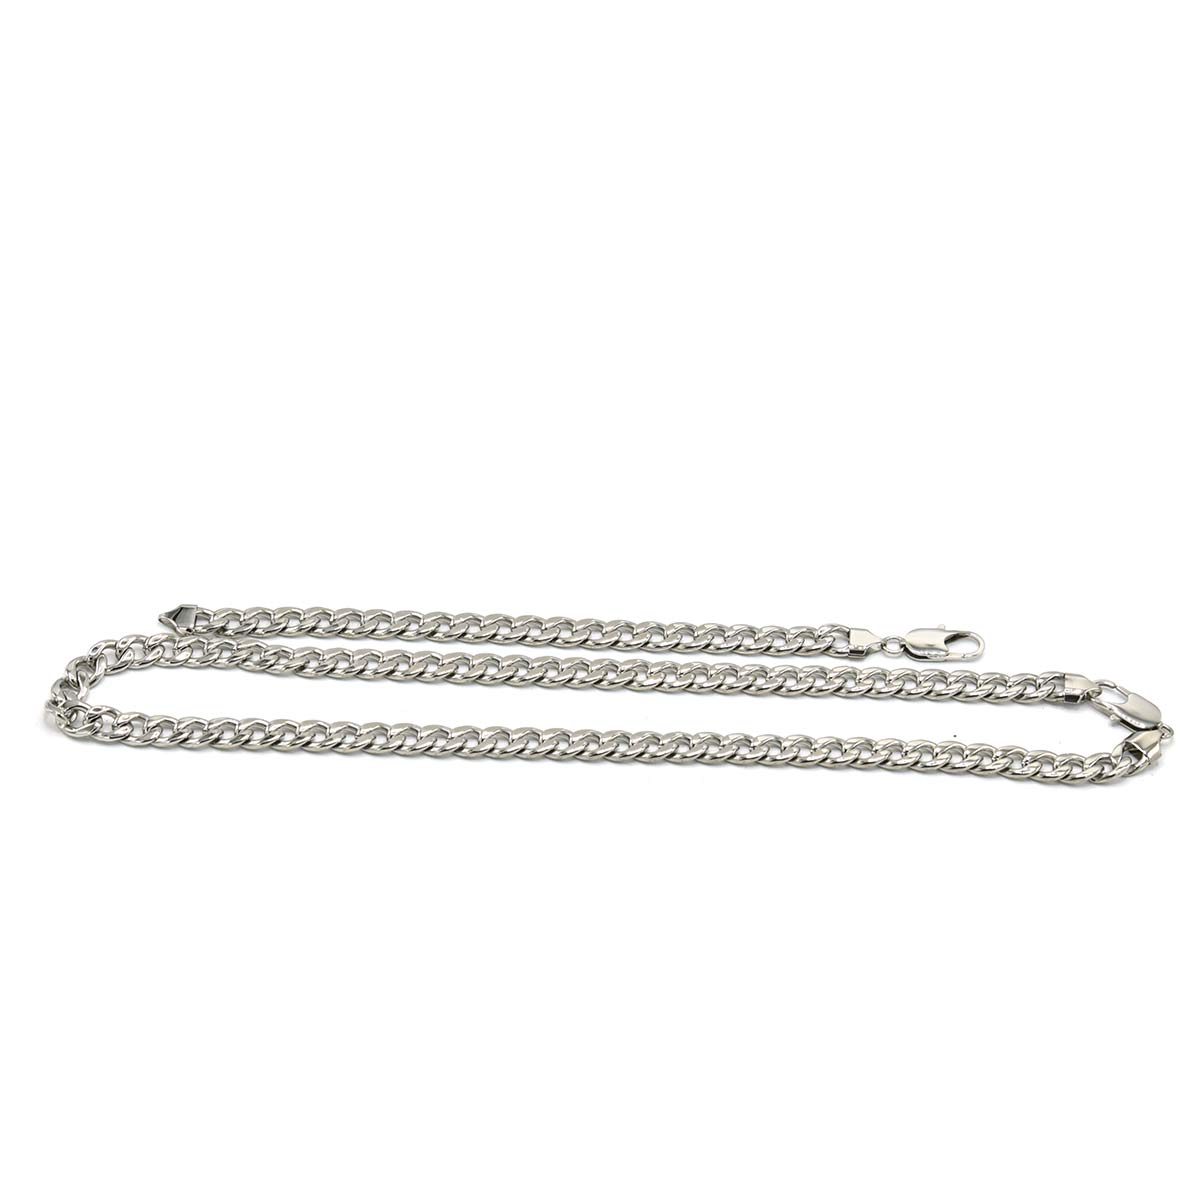 Stainless Steel Chain Bracelet Cuban Set 10mm 24 inch chain 8.5 inch bracelet